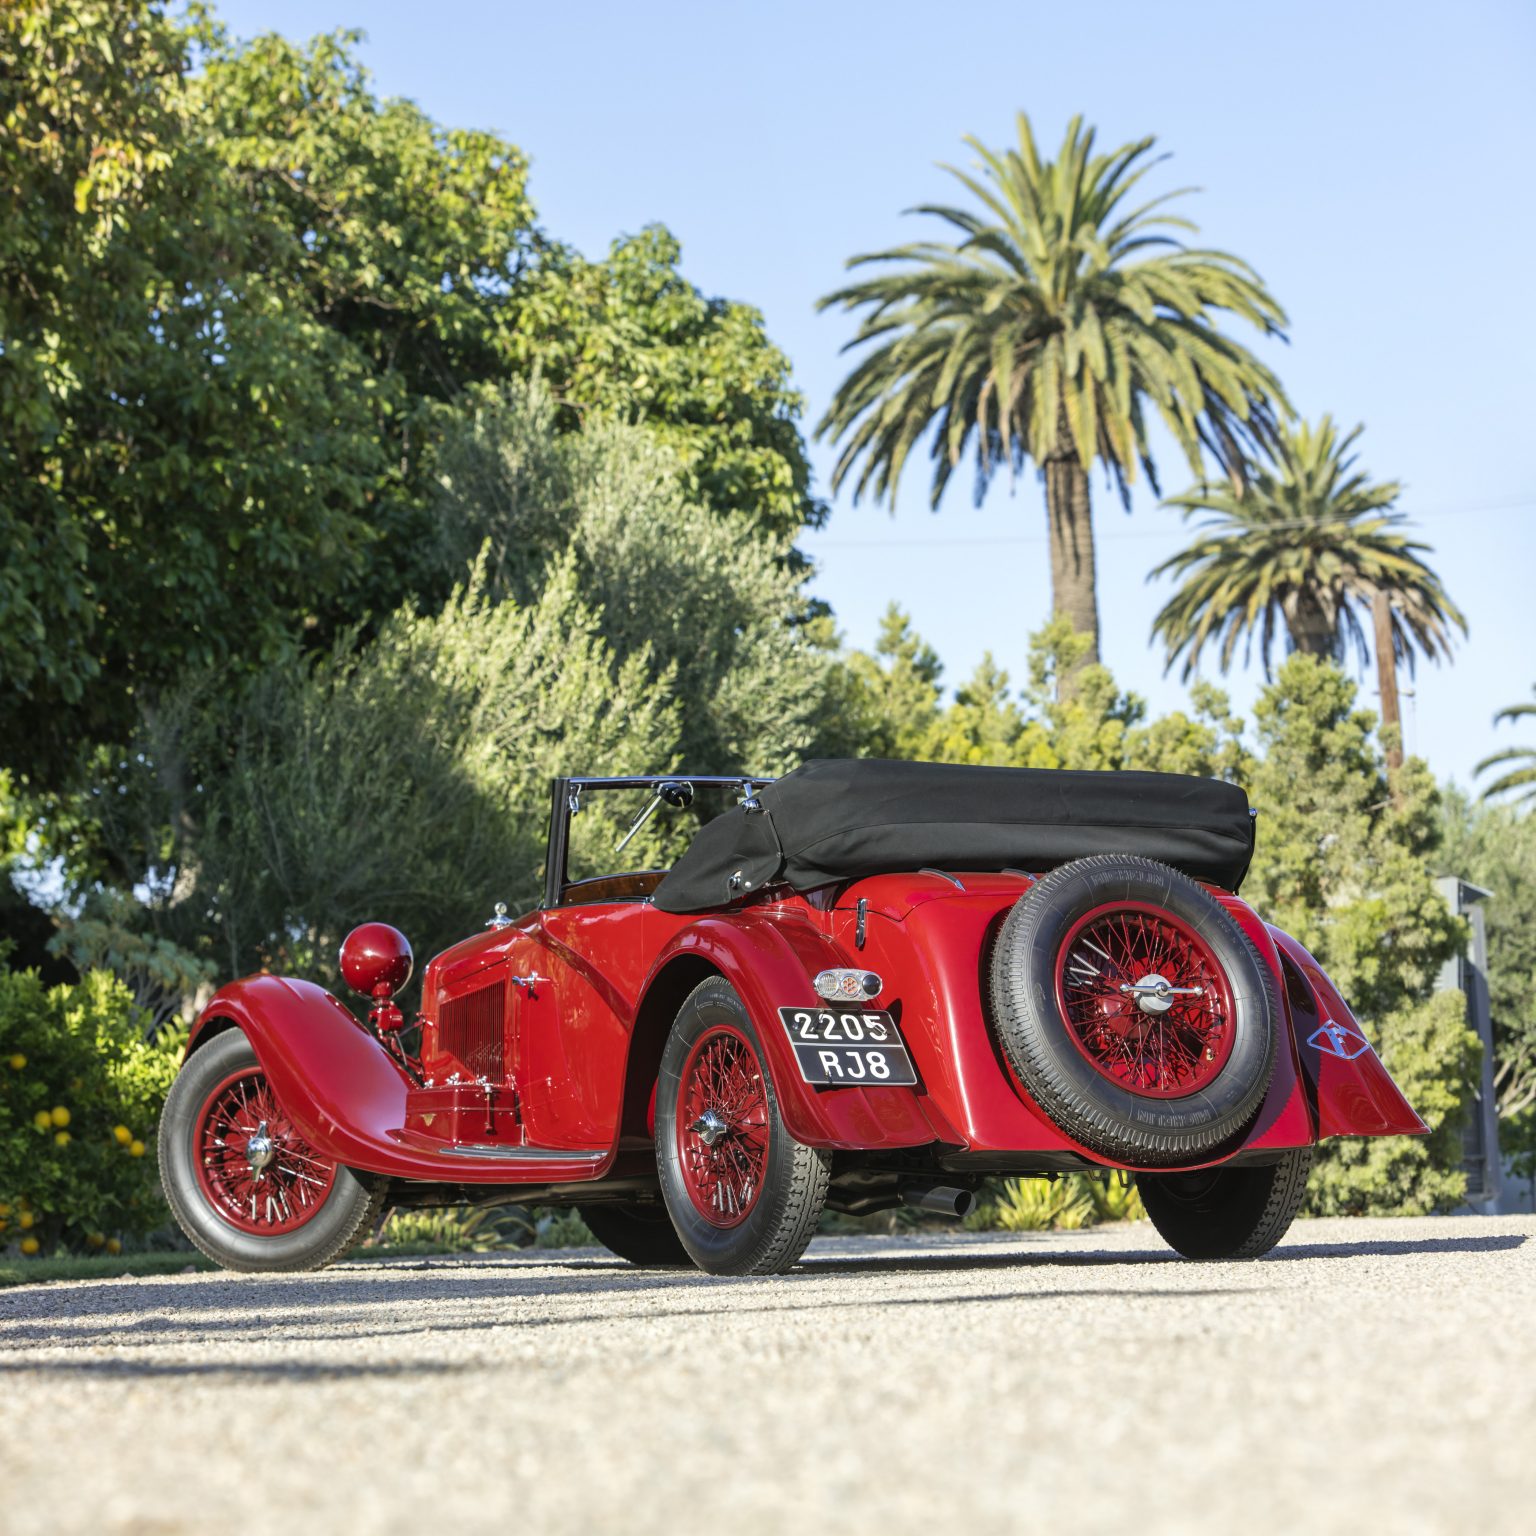 1934 Alfa Romeo 8C 2300 Cabriolet Decapotable 2 - - Alfa Romeo 8C To Star At Bonhams Quail Motorcar Auction 2020